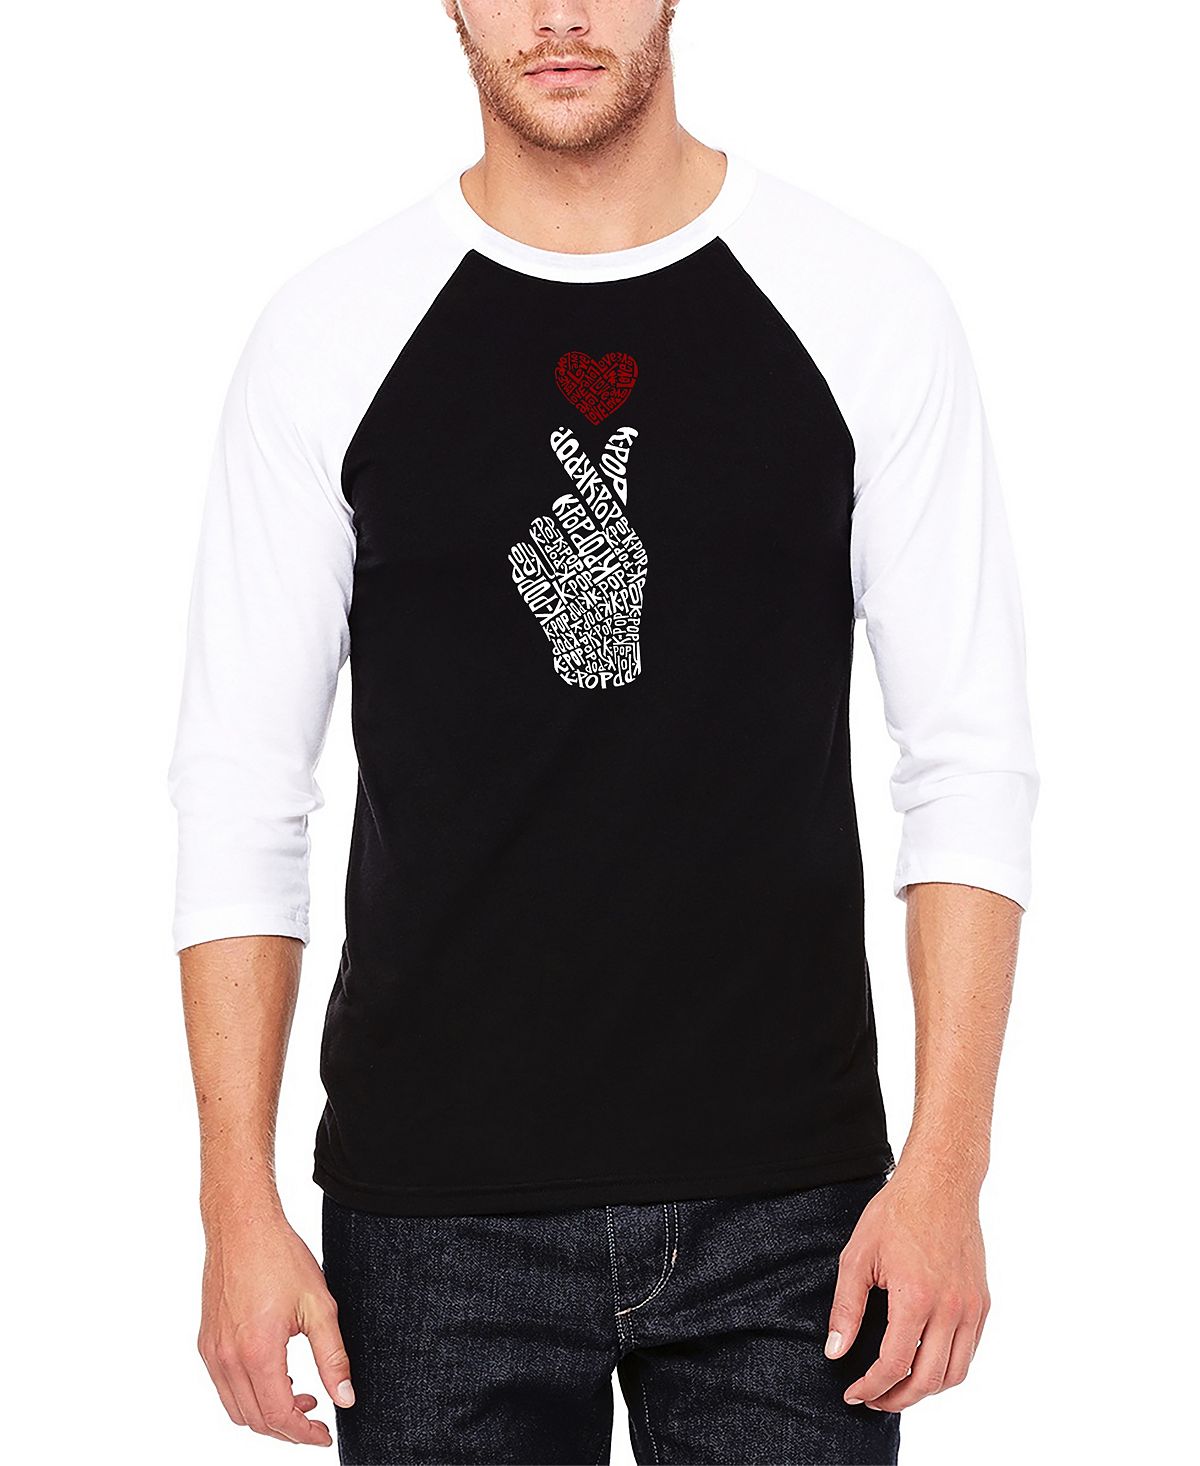 Мужская бейсбольная футболка реглан с рукавом 3/4 k-pop word art футболка LA Pop Art, черно-белый 55 шт набор почтовые открытки в стиле k pop